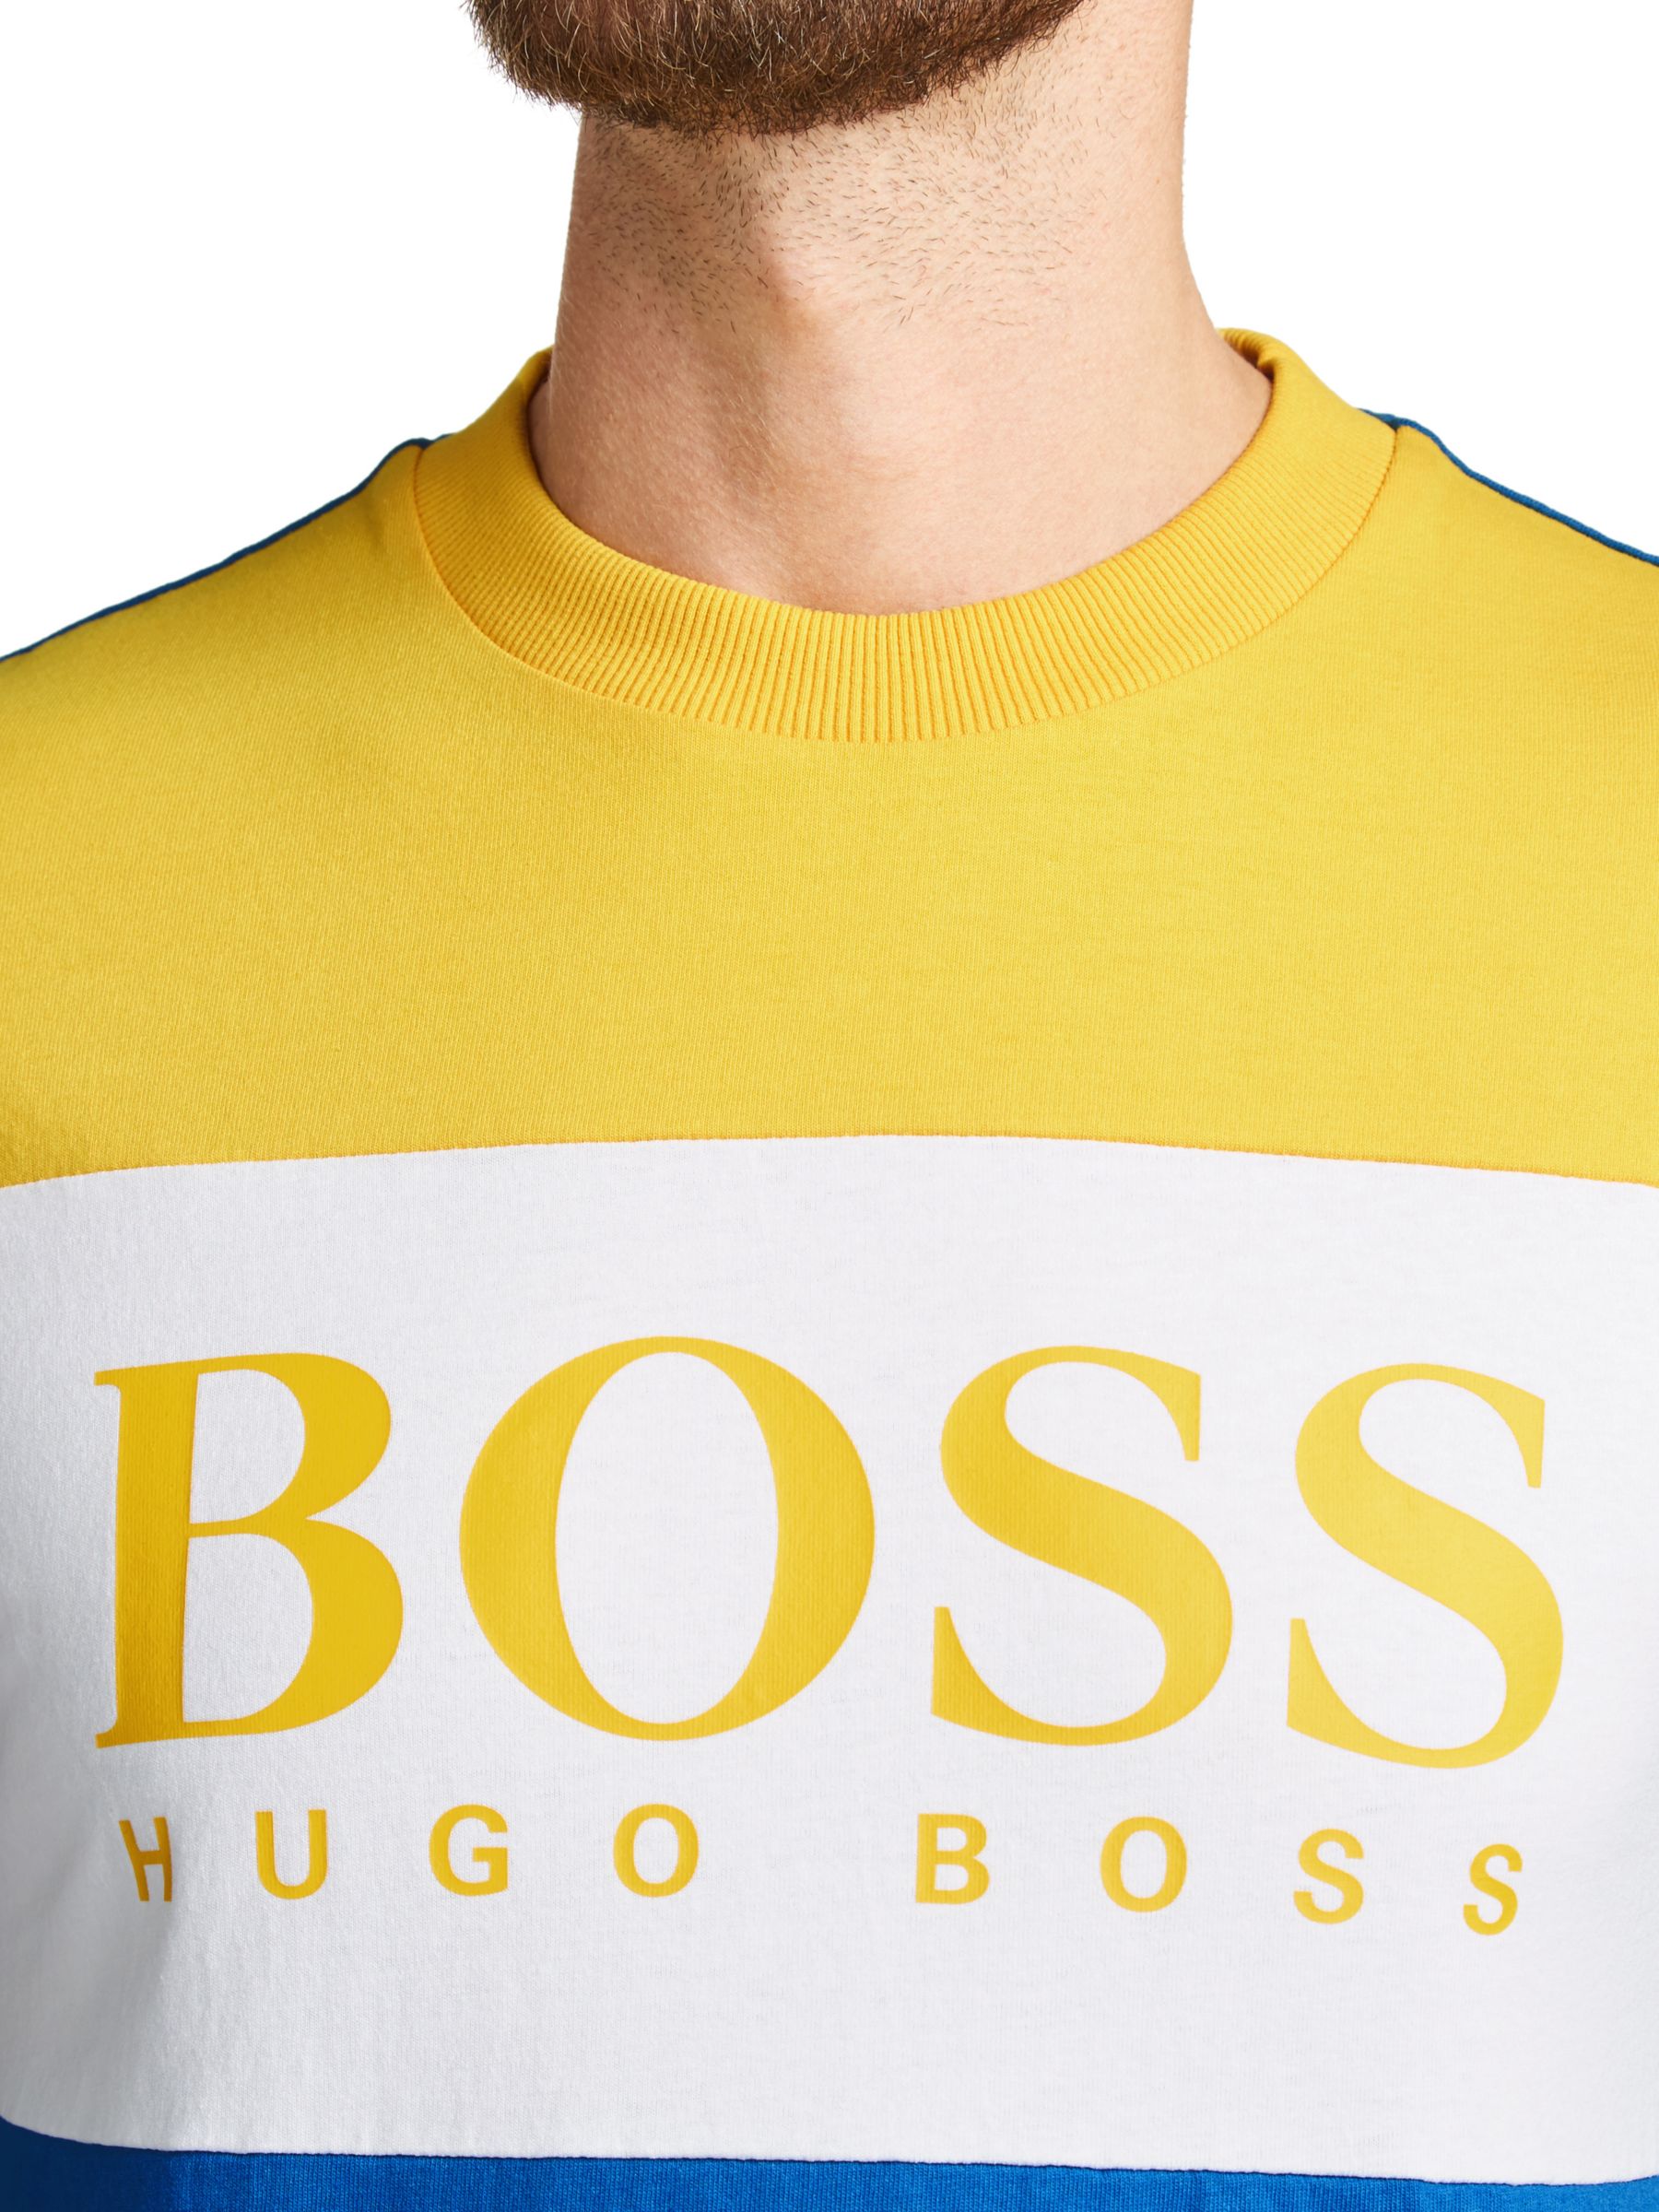 boss t shirt xxl